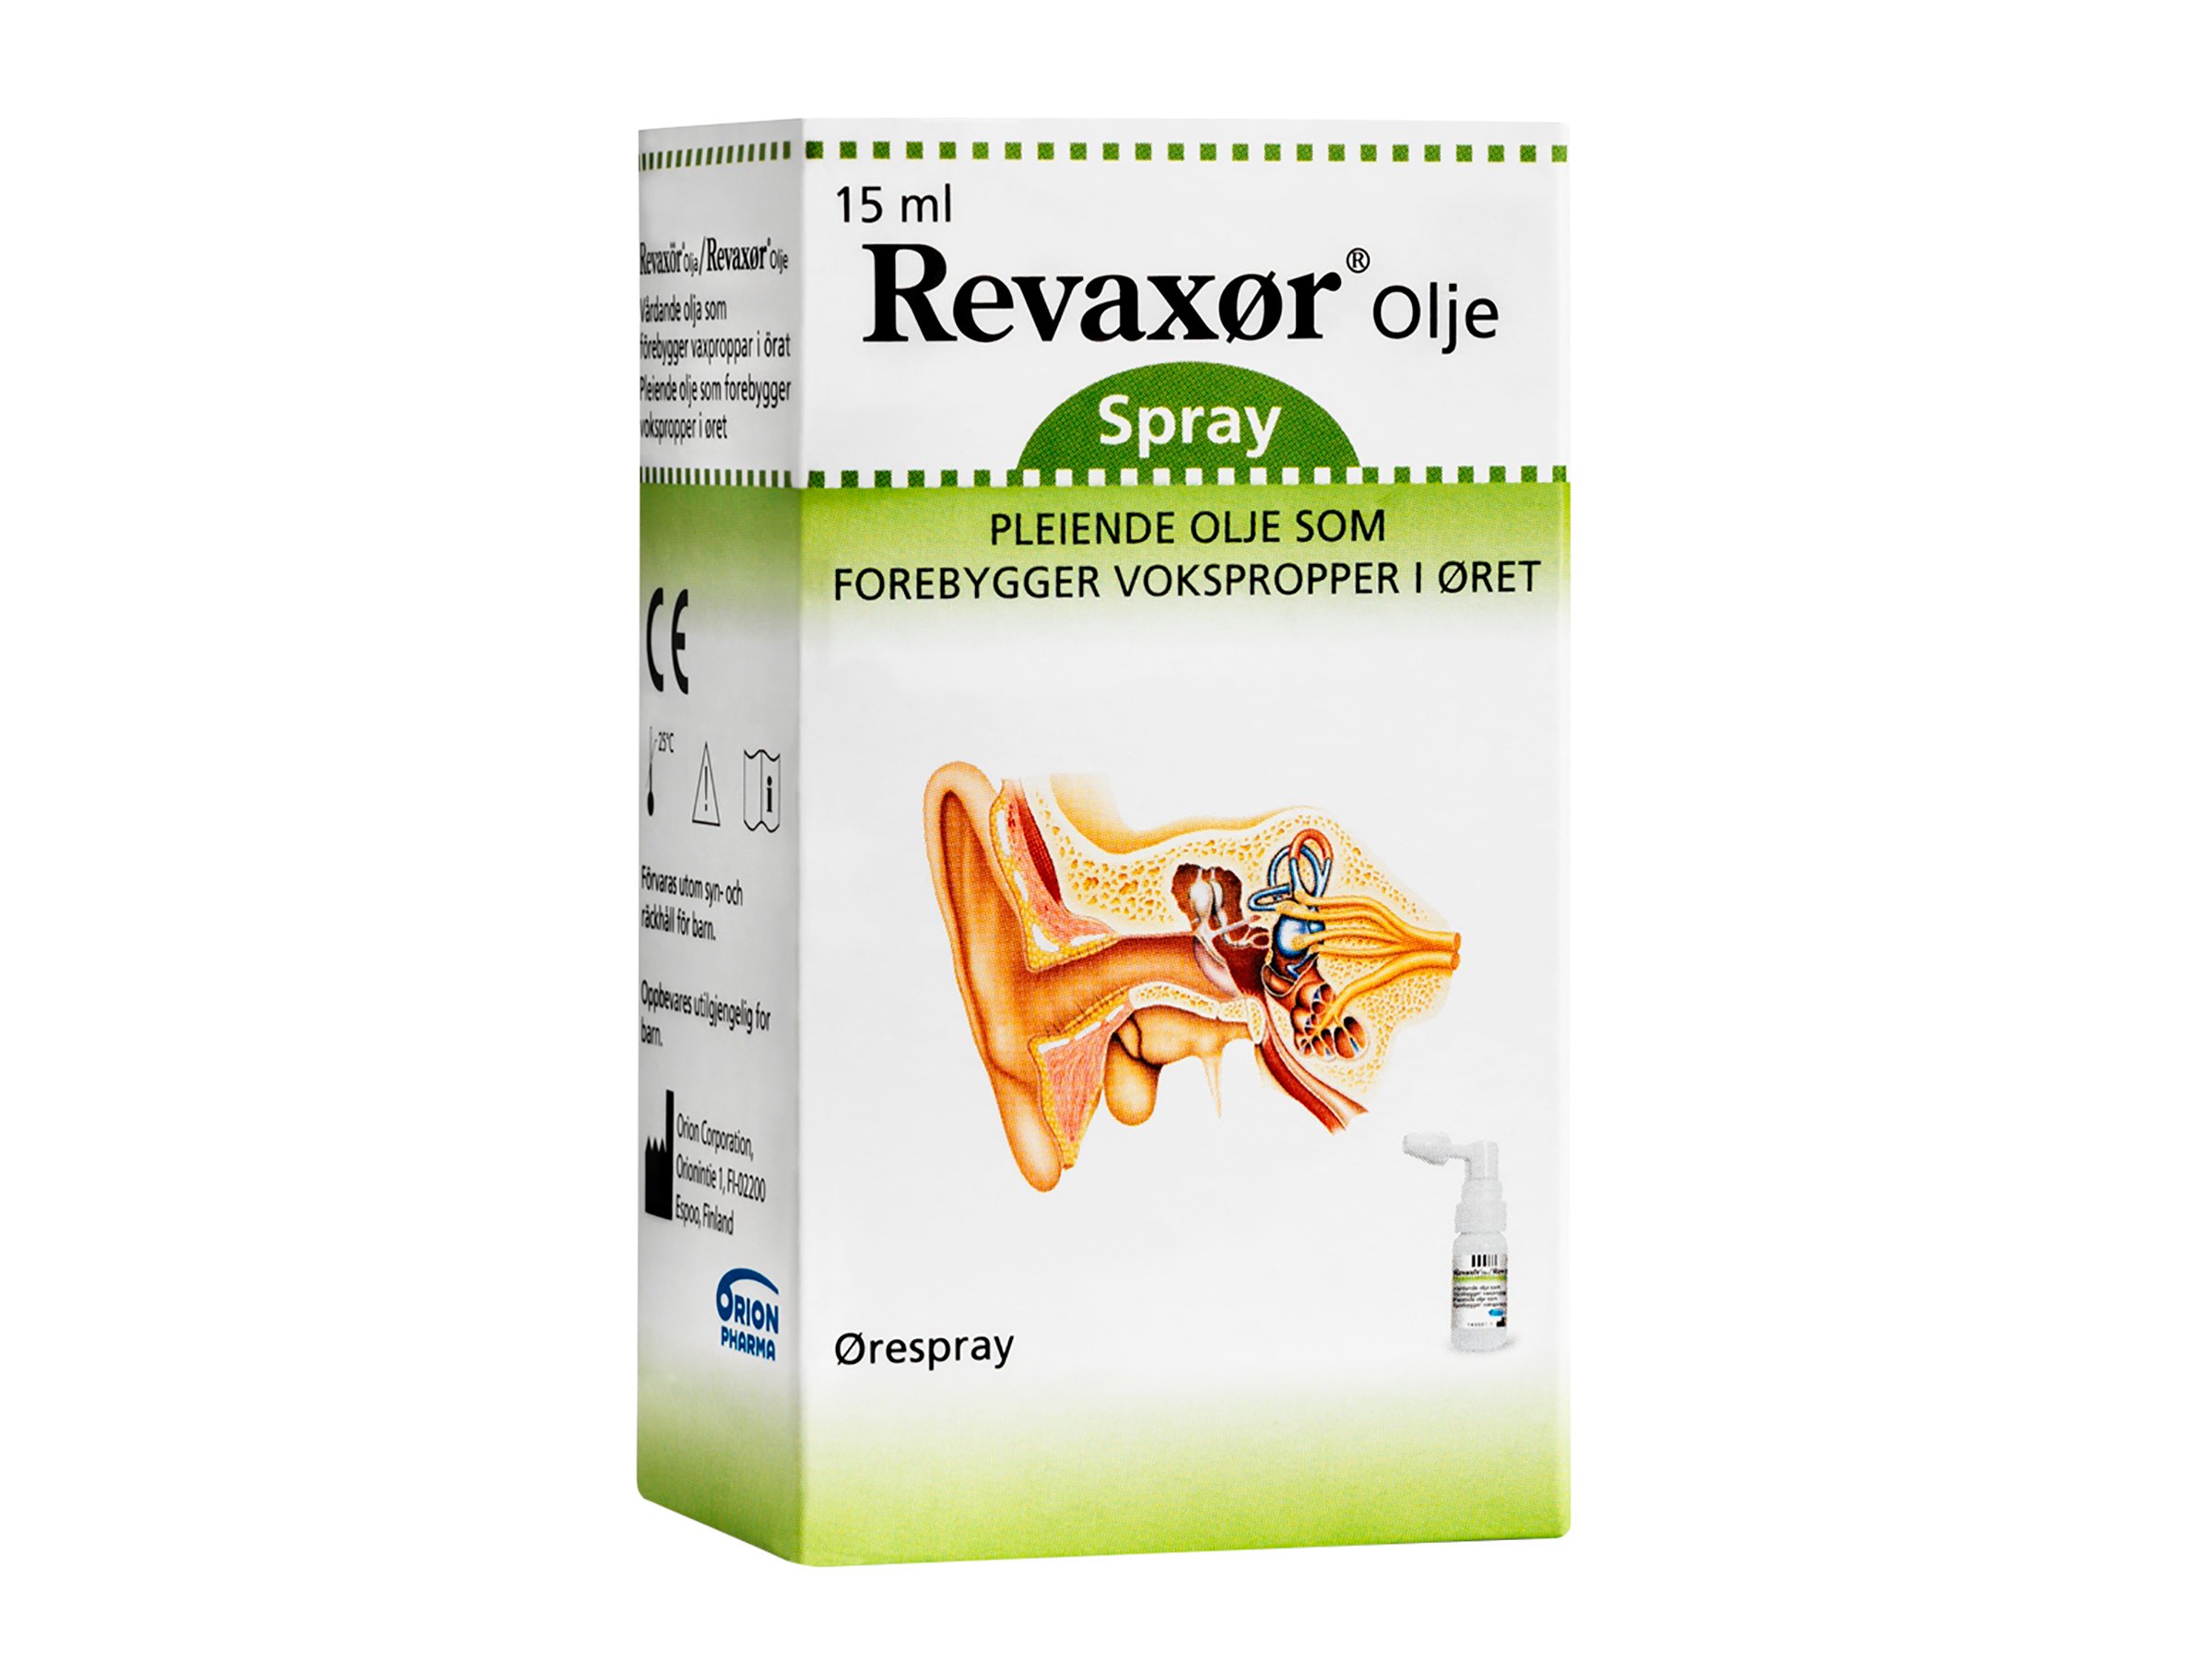 Revaxør Forebyggende øreolje, 15 ml, spray